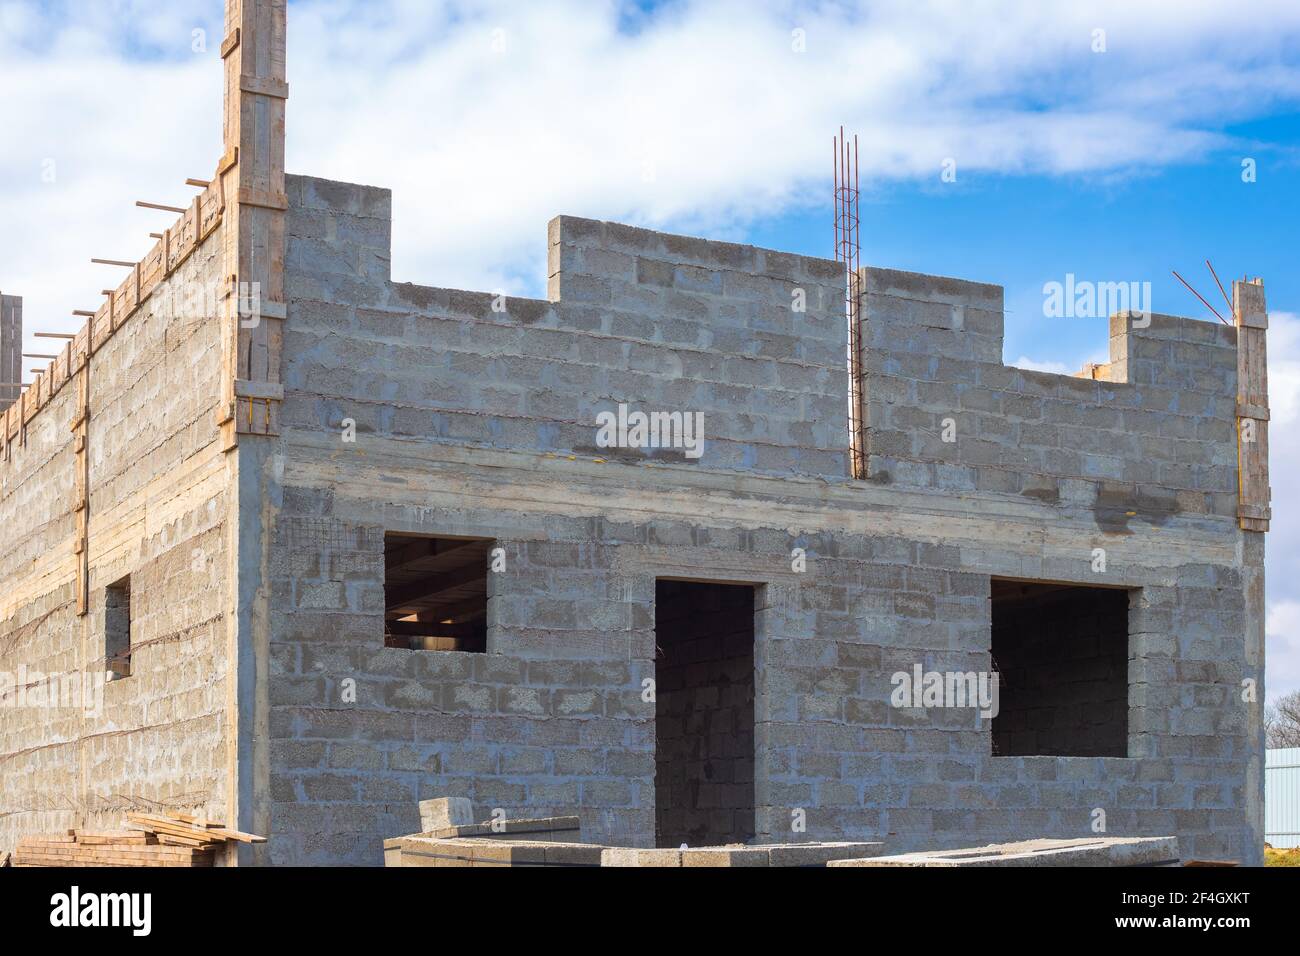 Bau von Gebäuden aus Zinder Block. Baustelle eines zweistöckigen Landhauses aus grauen großen Ziegelblöcken mit hervorstehender Fittine Stockfoto